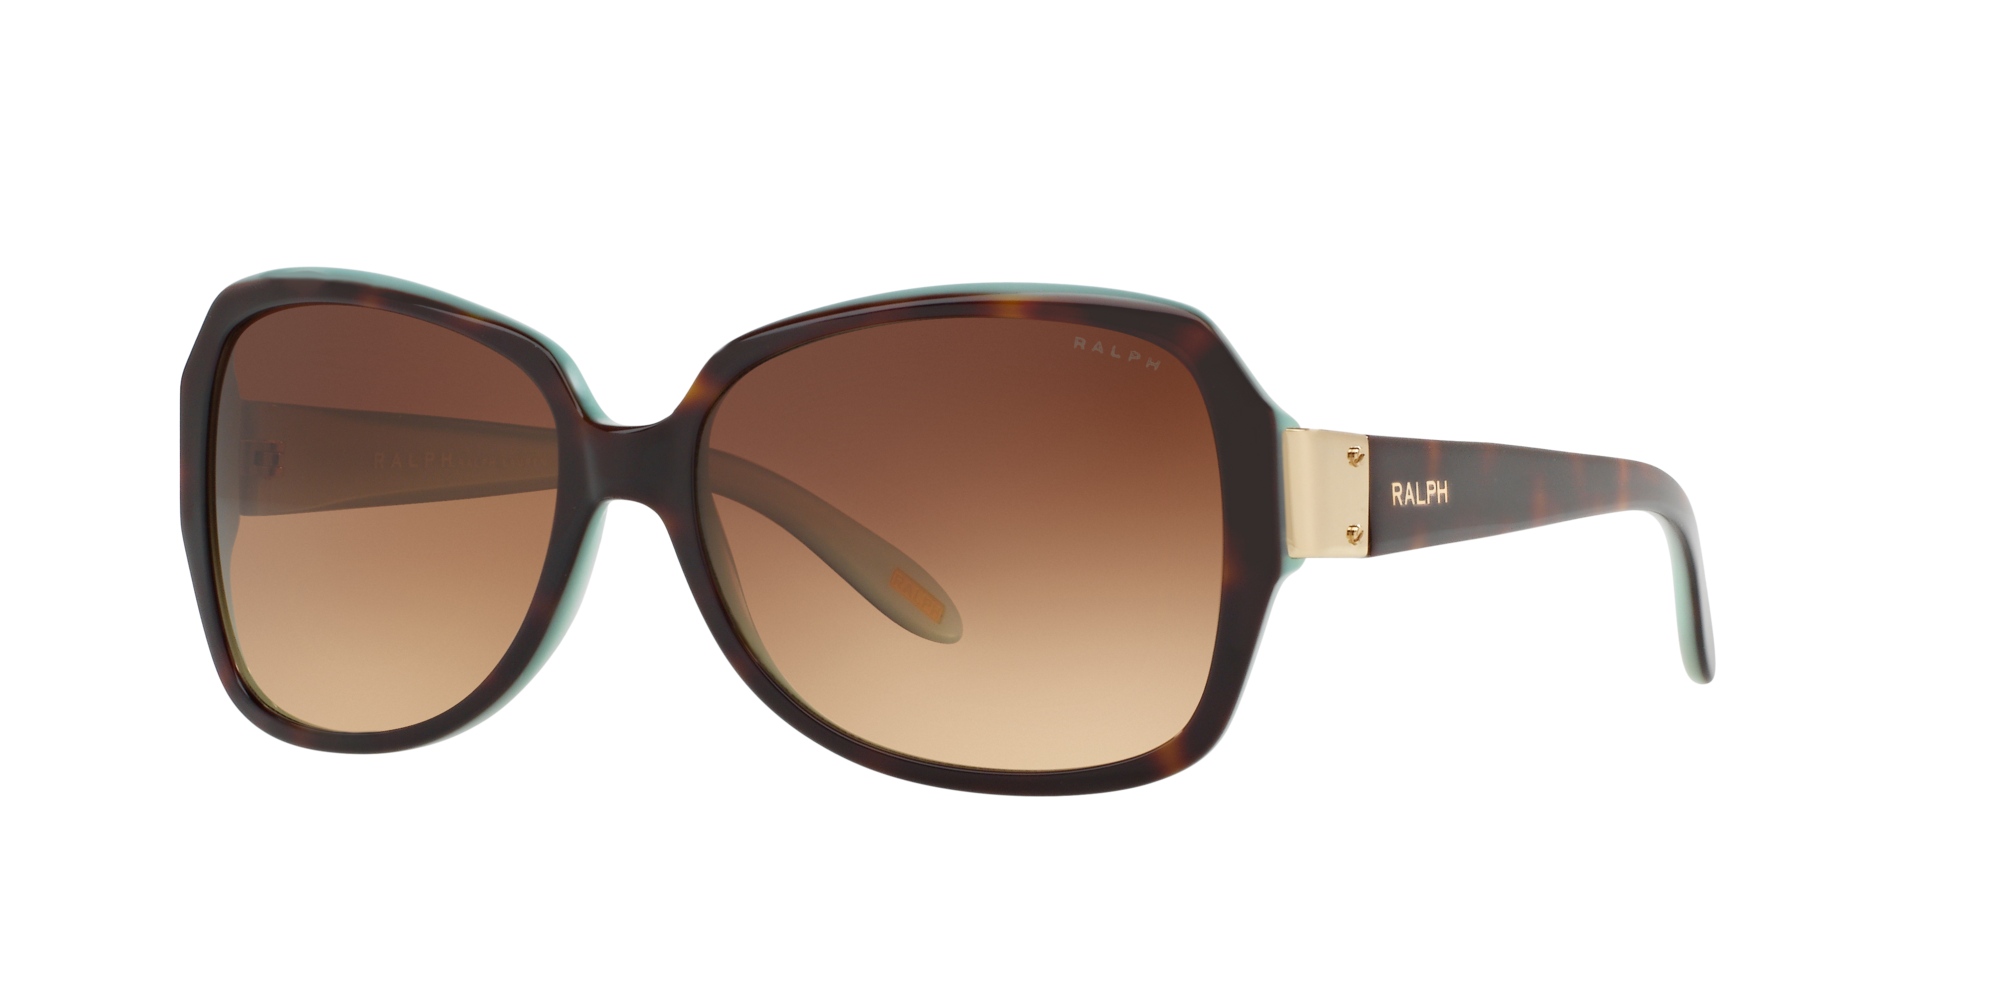 RALPH Ralph Lauren Sunglasses - gradient grey/grey - Zalando.co.uk